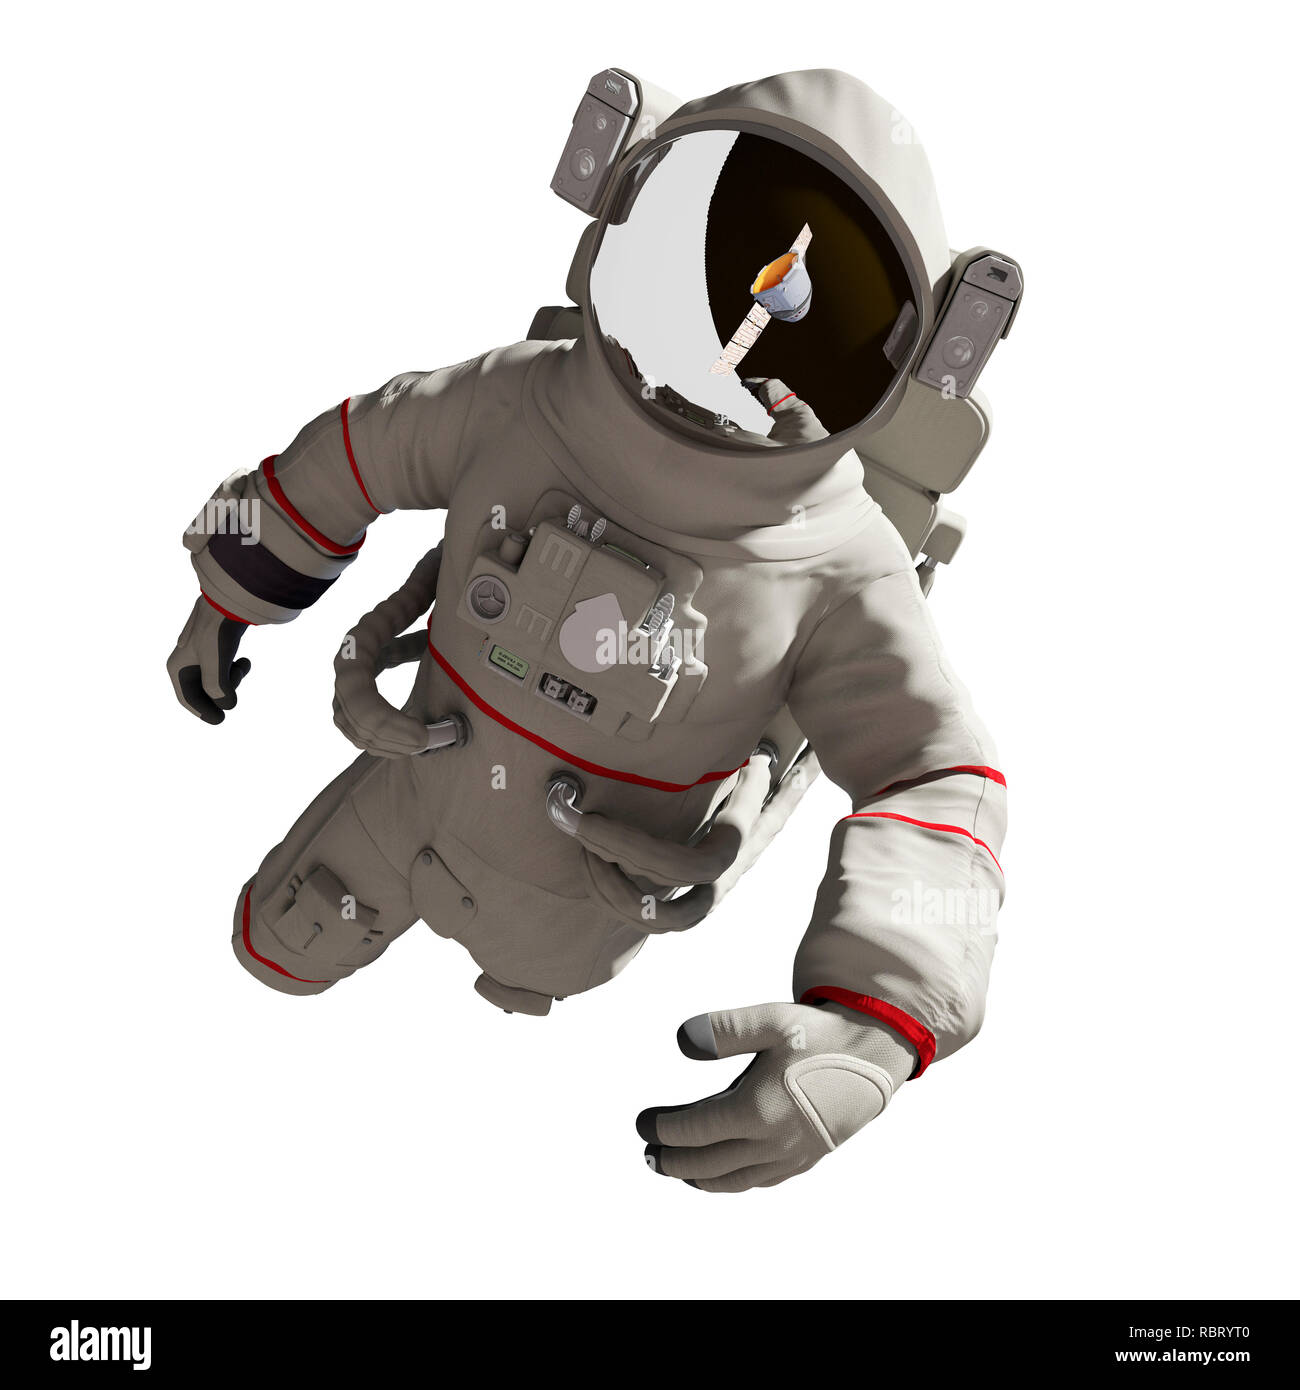 Illustration of an astronaut. Stock Photo